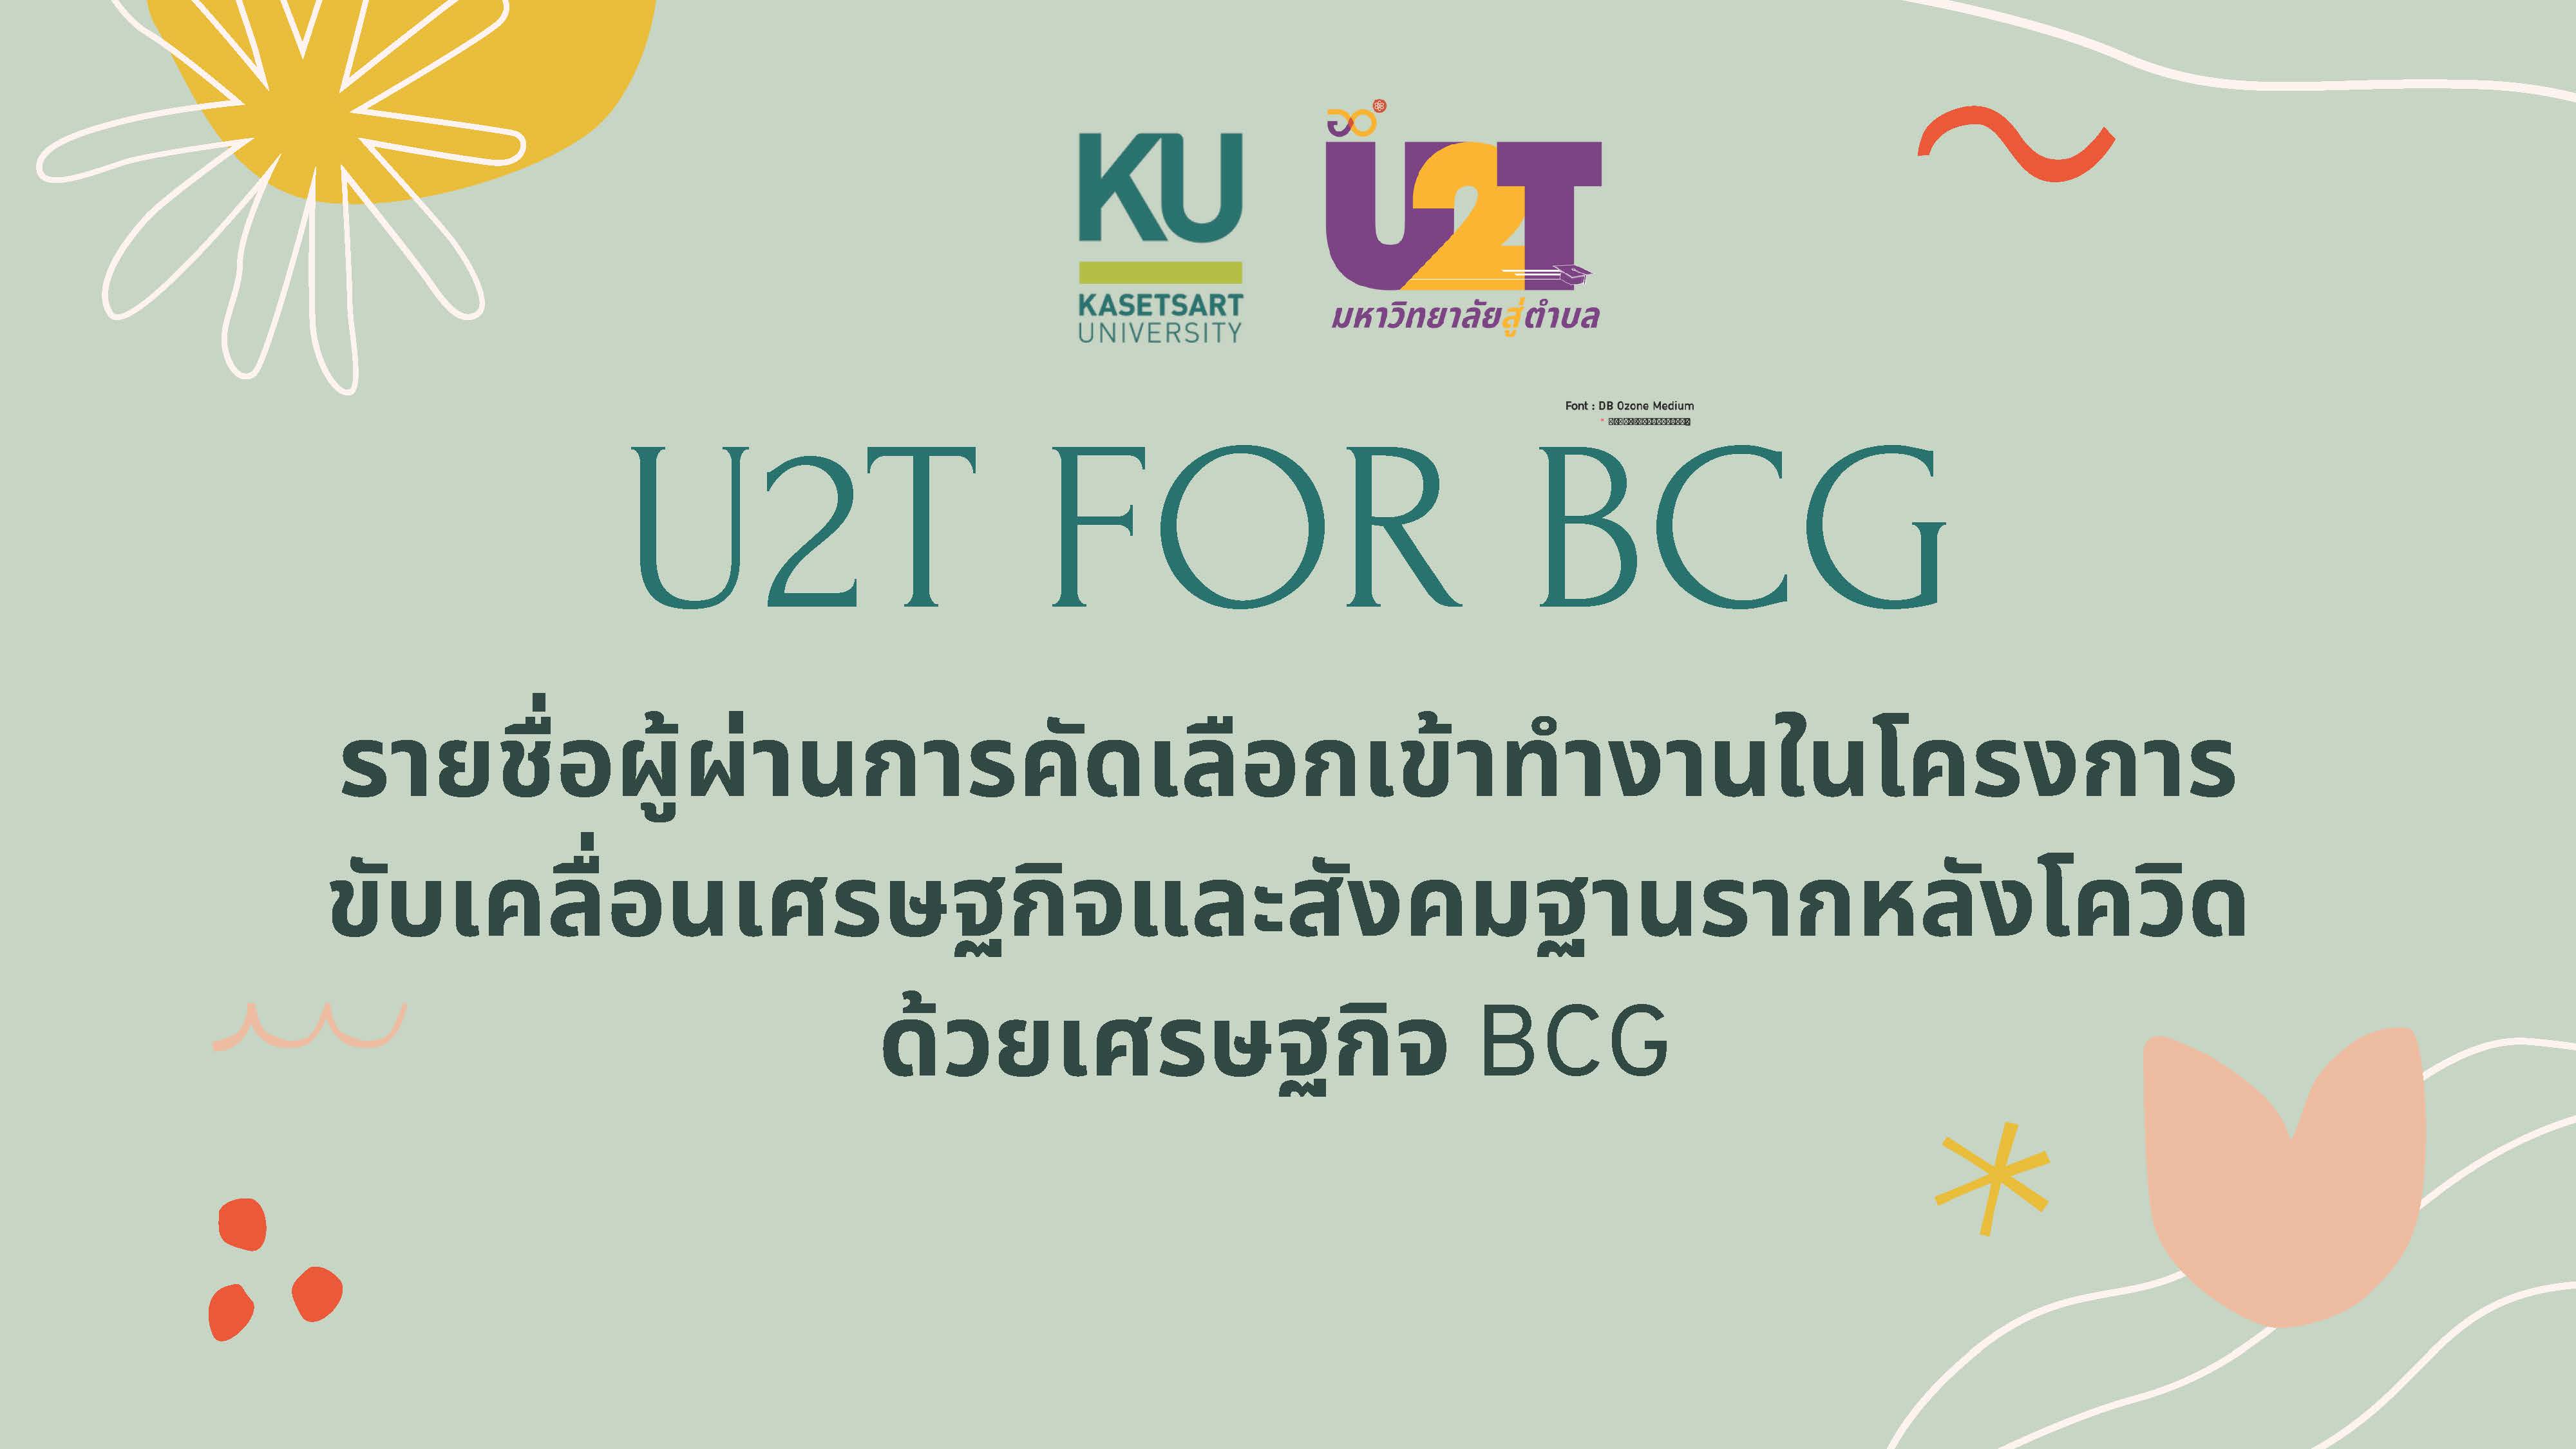 ประกาศรายชื่อผู้ผ่านการคัดเลือกเข้าทำงานในโครงการ 1 ตำบล 1 มหาวิทยาลัย (U2T for BCG) (ครั้งที่ 1)